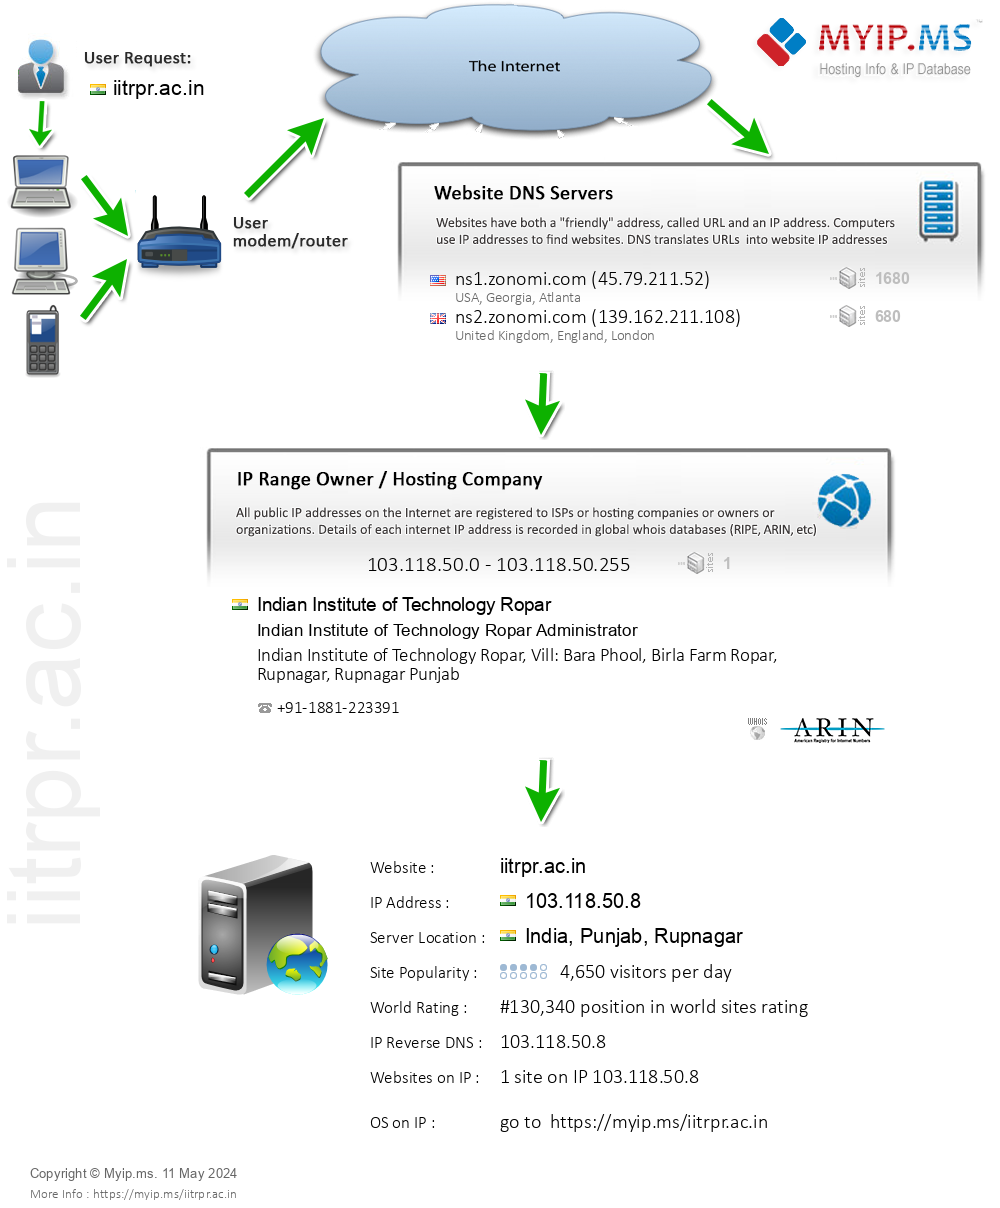 Iitrpr.ac.in - Website Hosting Visual IP Diagram